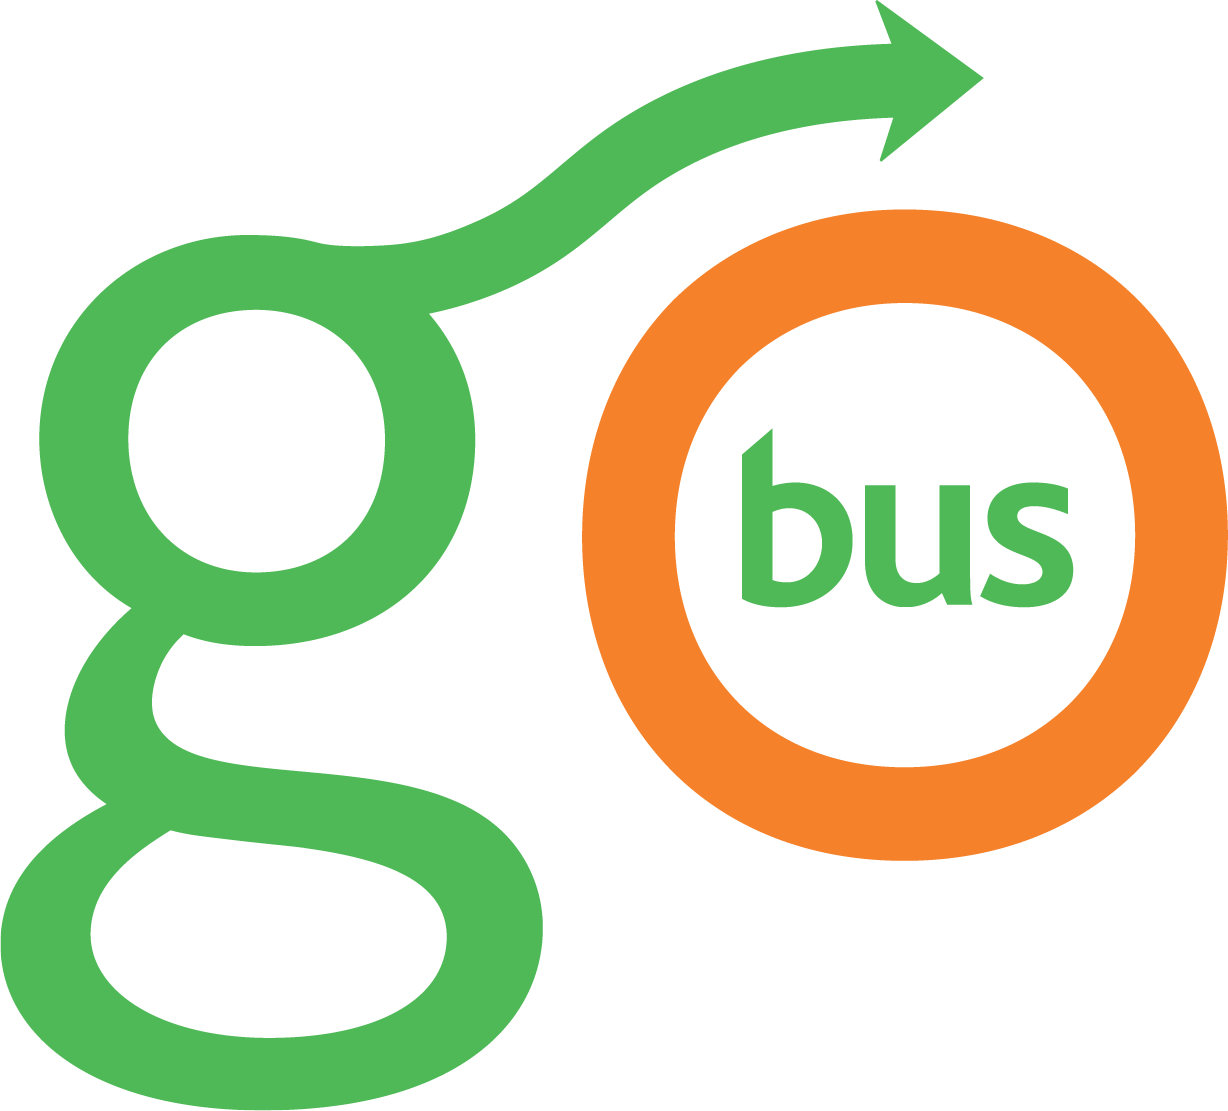 Go Bus Logo New Lg 